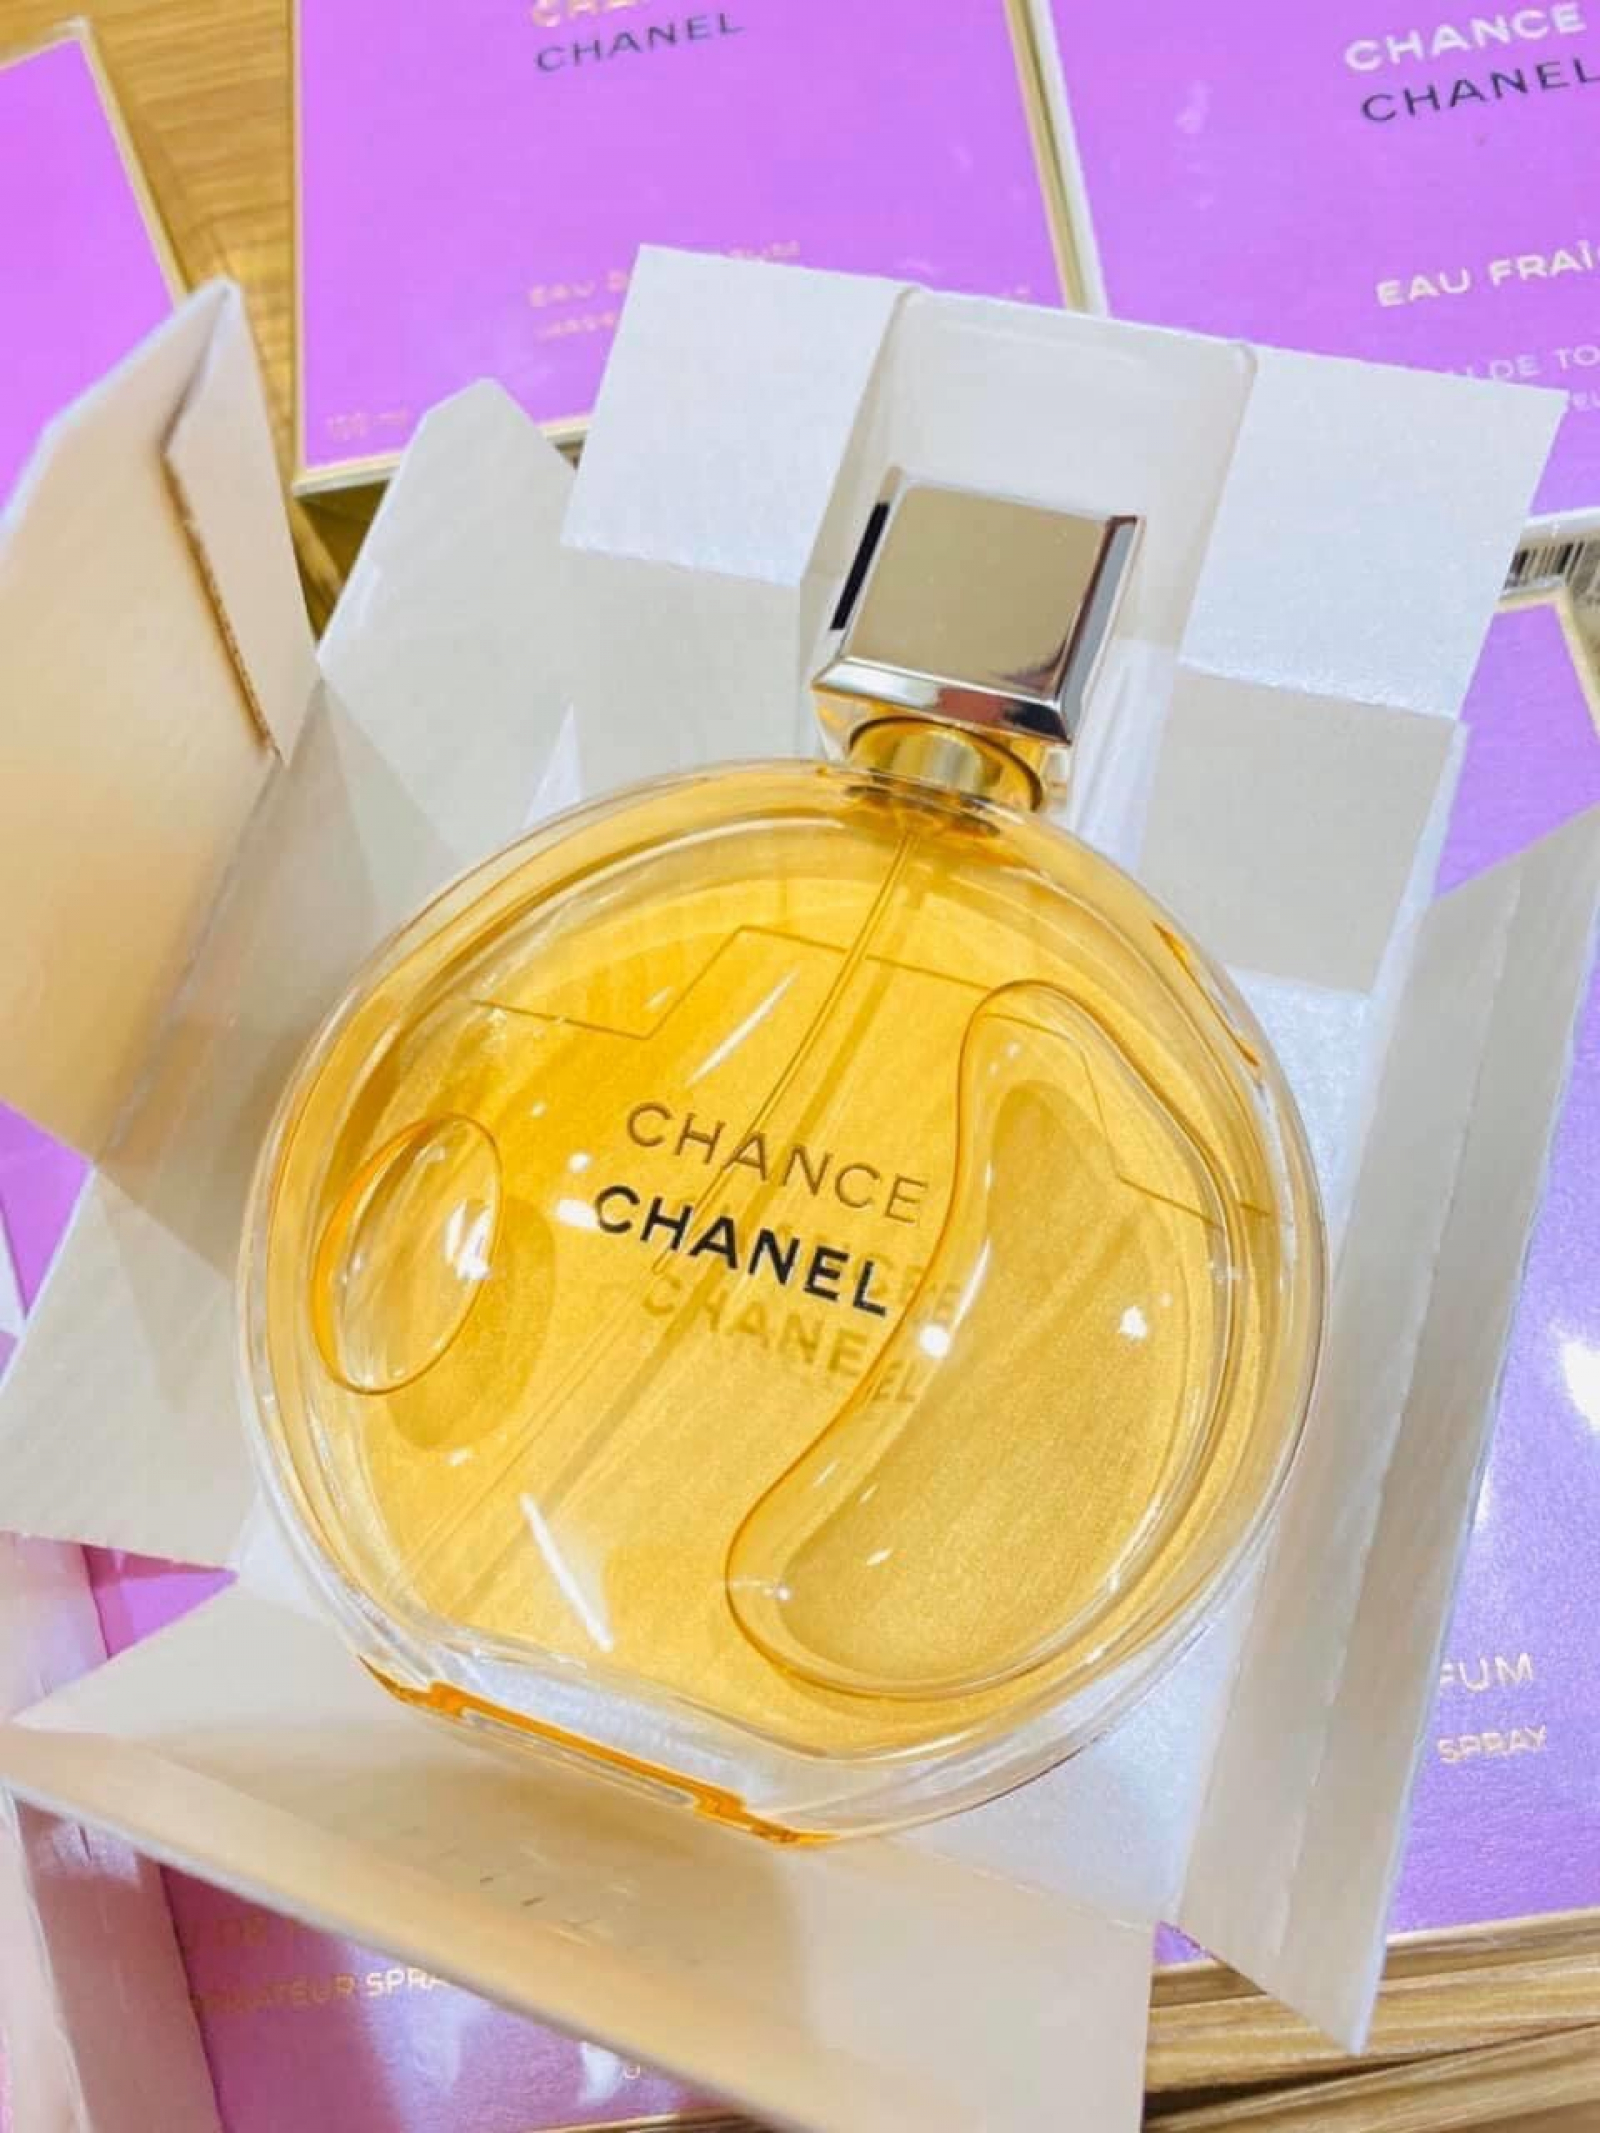 Nước Hoa Chiết Chanel Chance Eau Fraiche  Xanh EDT 10ml  19Perfume